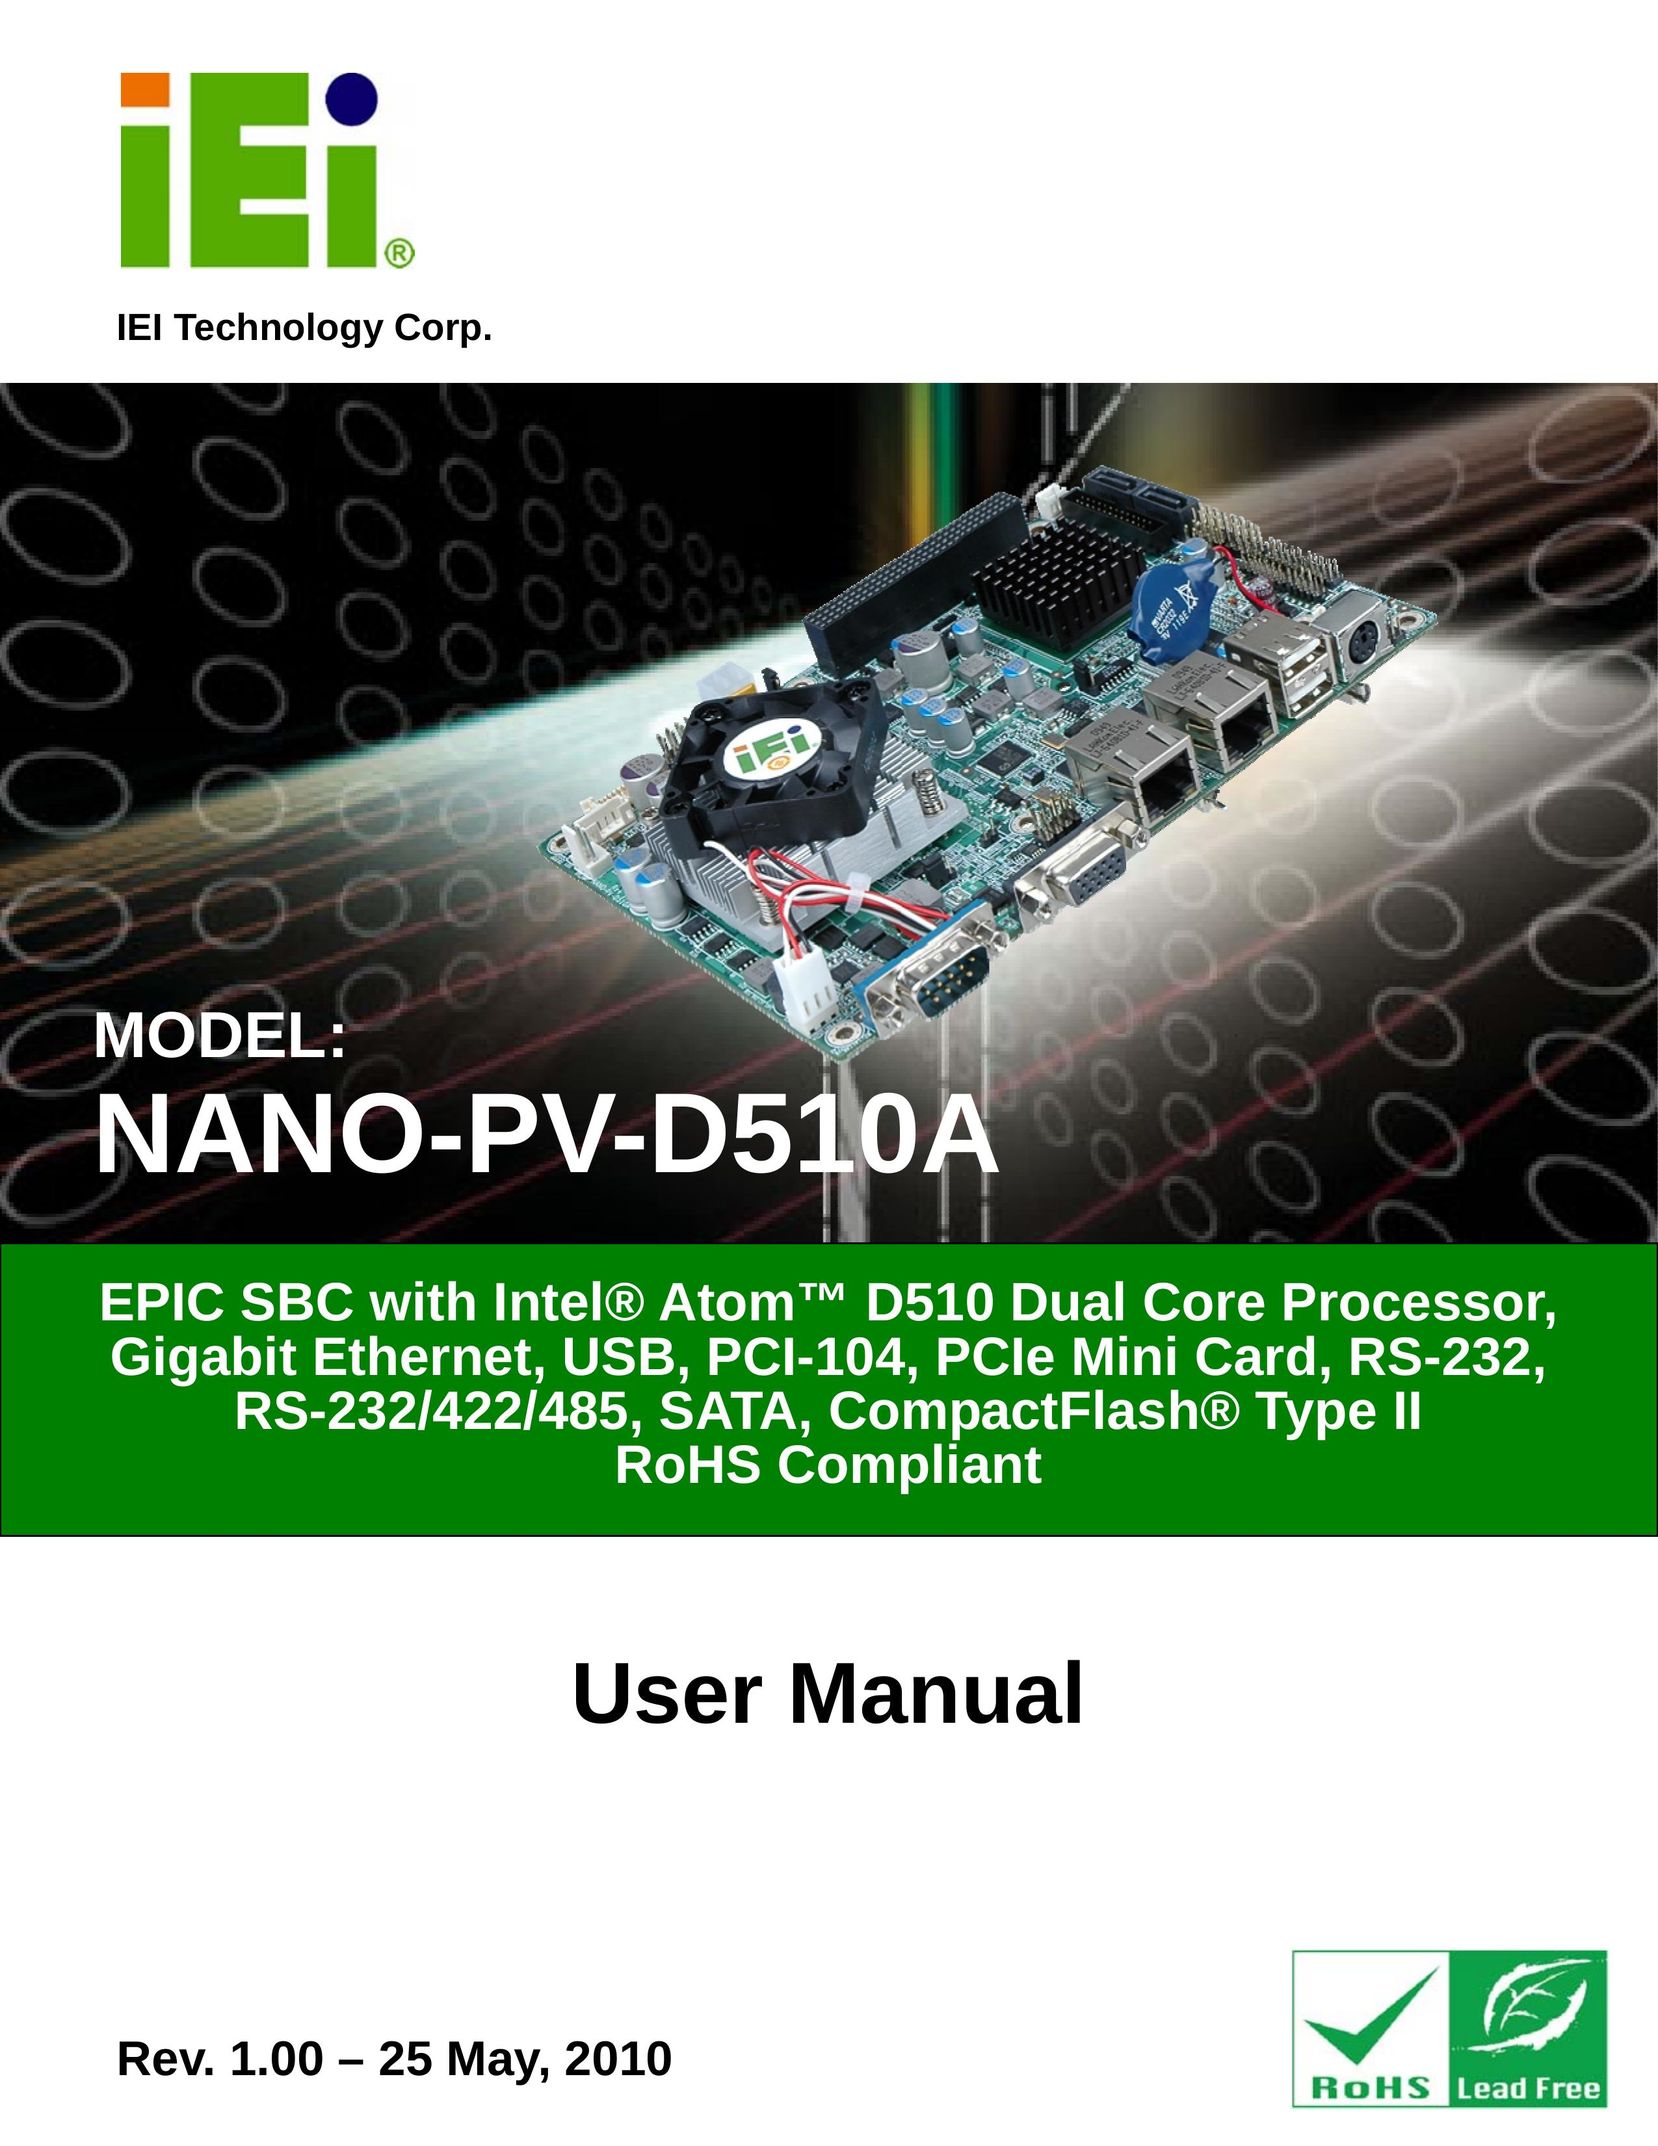 Dialogue Tech NANO-PV-D510A Laptop User Manual